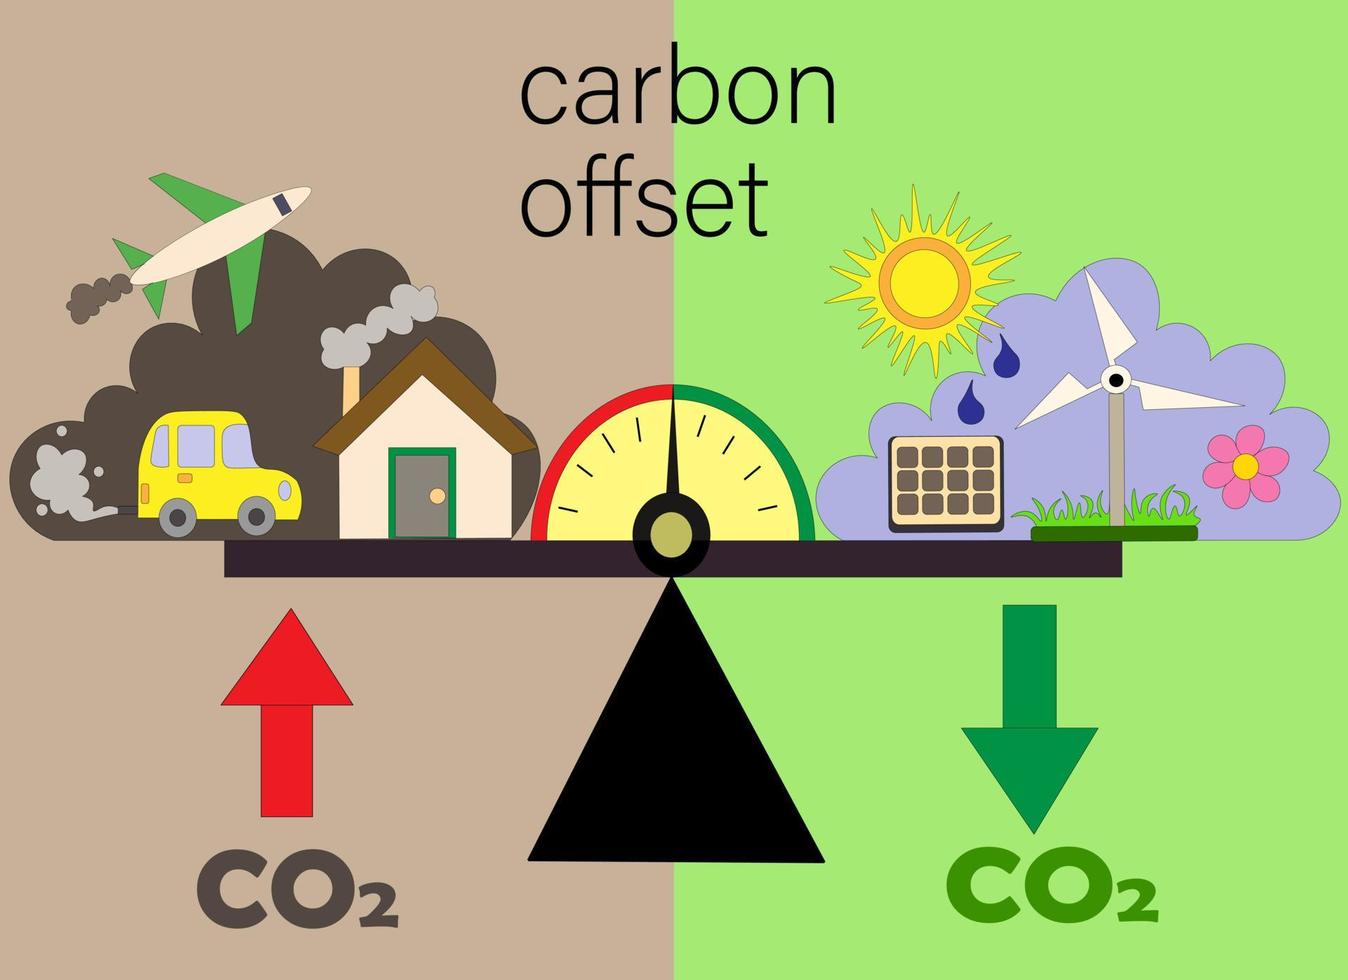 koldioxidkompensation. koldioxid neutral. skalor för transporter och fabriksutsläpp samt absorption av kol och växthusgaser. illustrationer av en noll- eller neutral miljöstrategi. vektor